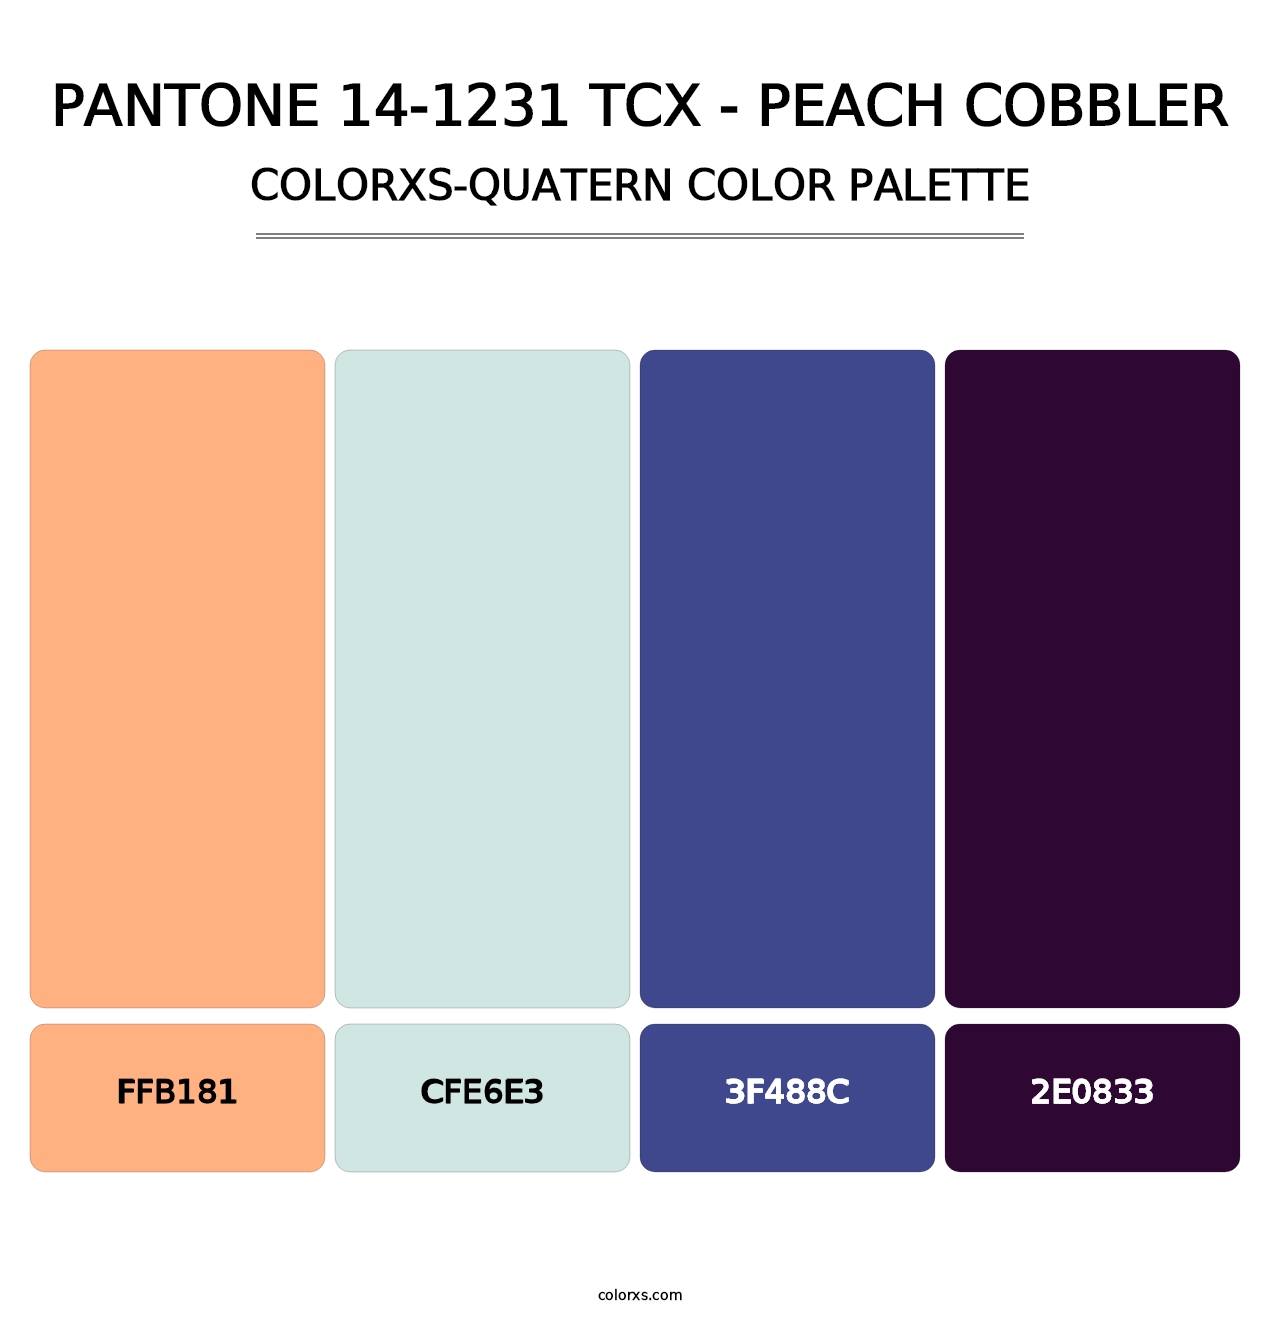 PANTONE 14-1231 TCX - Peach Cobbler - Colorxs Quatern Palette